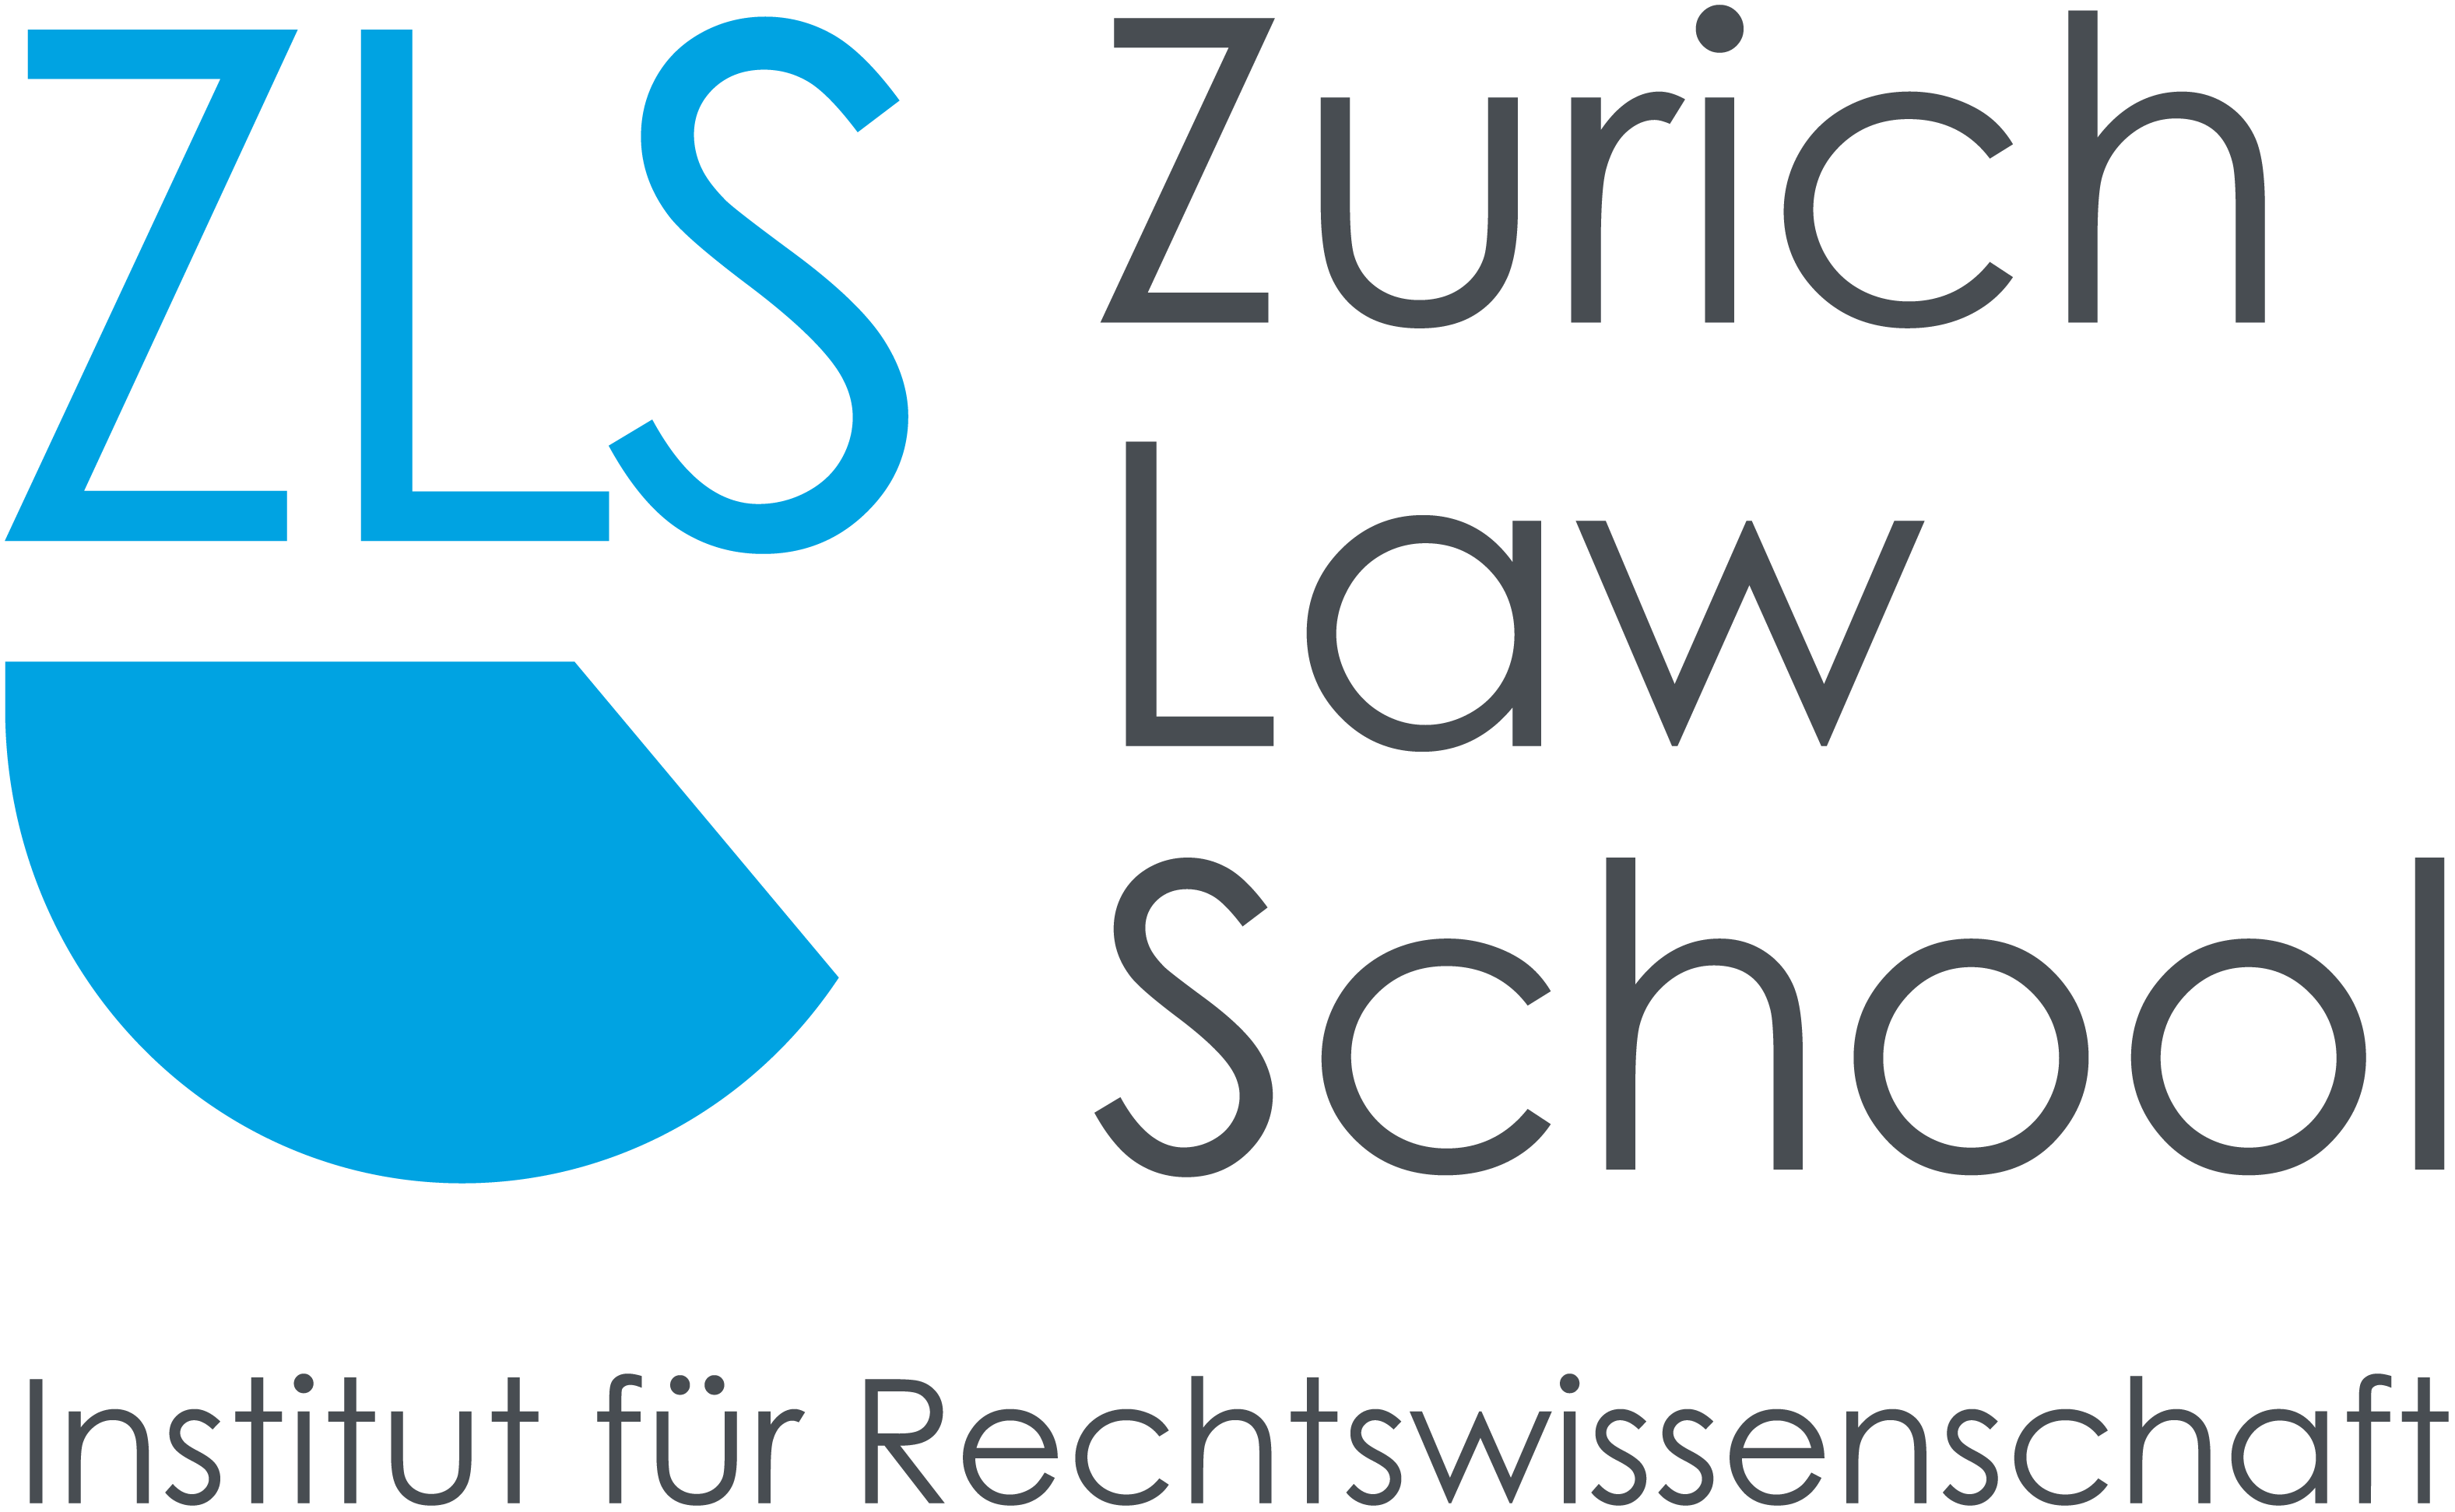 ZLS Zurich Law School zum Akkreditierungsverfahren zugelassen